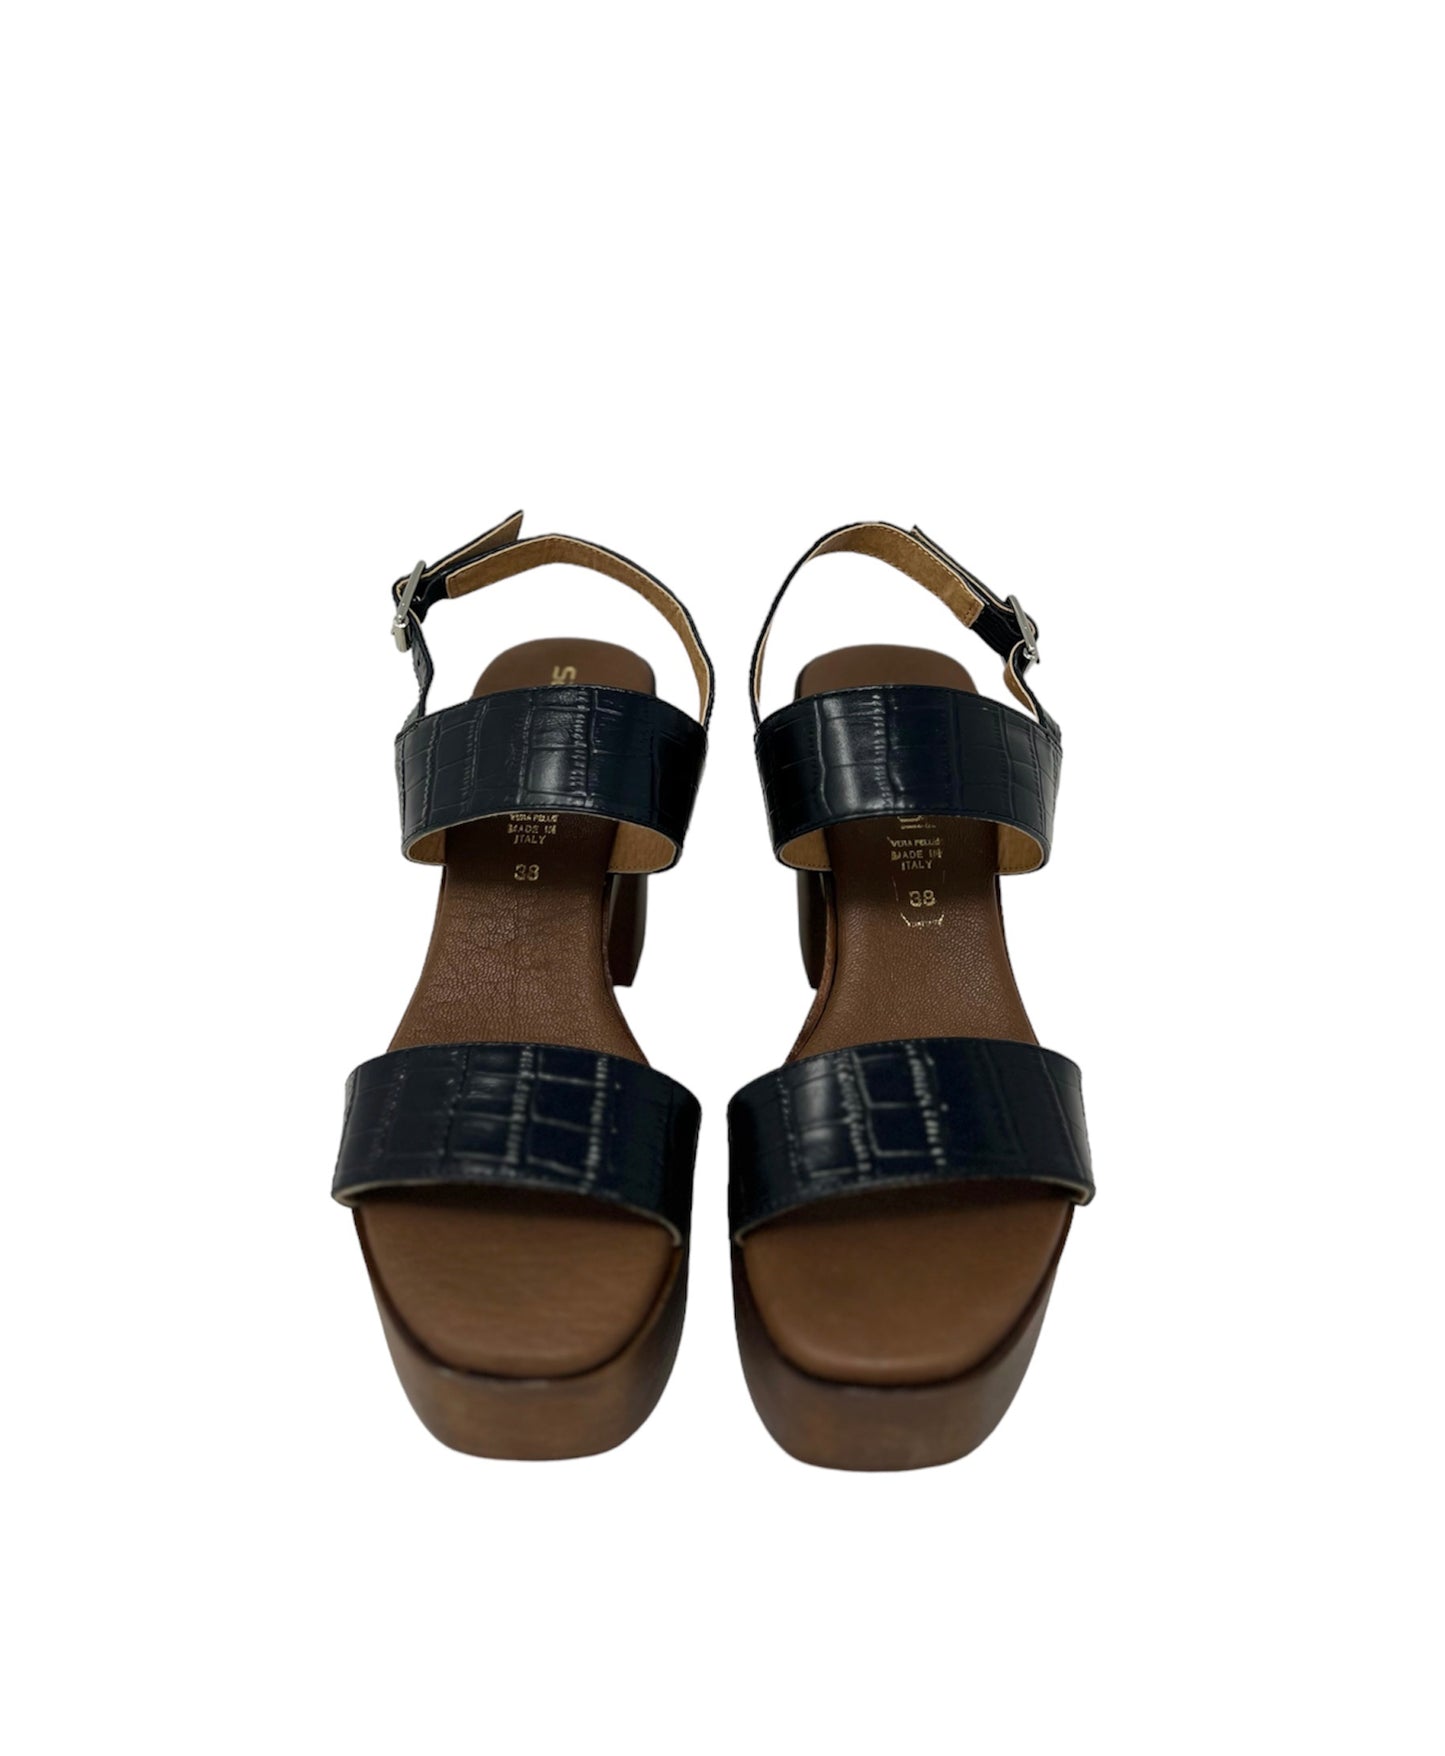 Sandalo con tacco e plateau in pelle stampa cocco nero - 71253NE